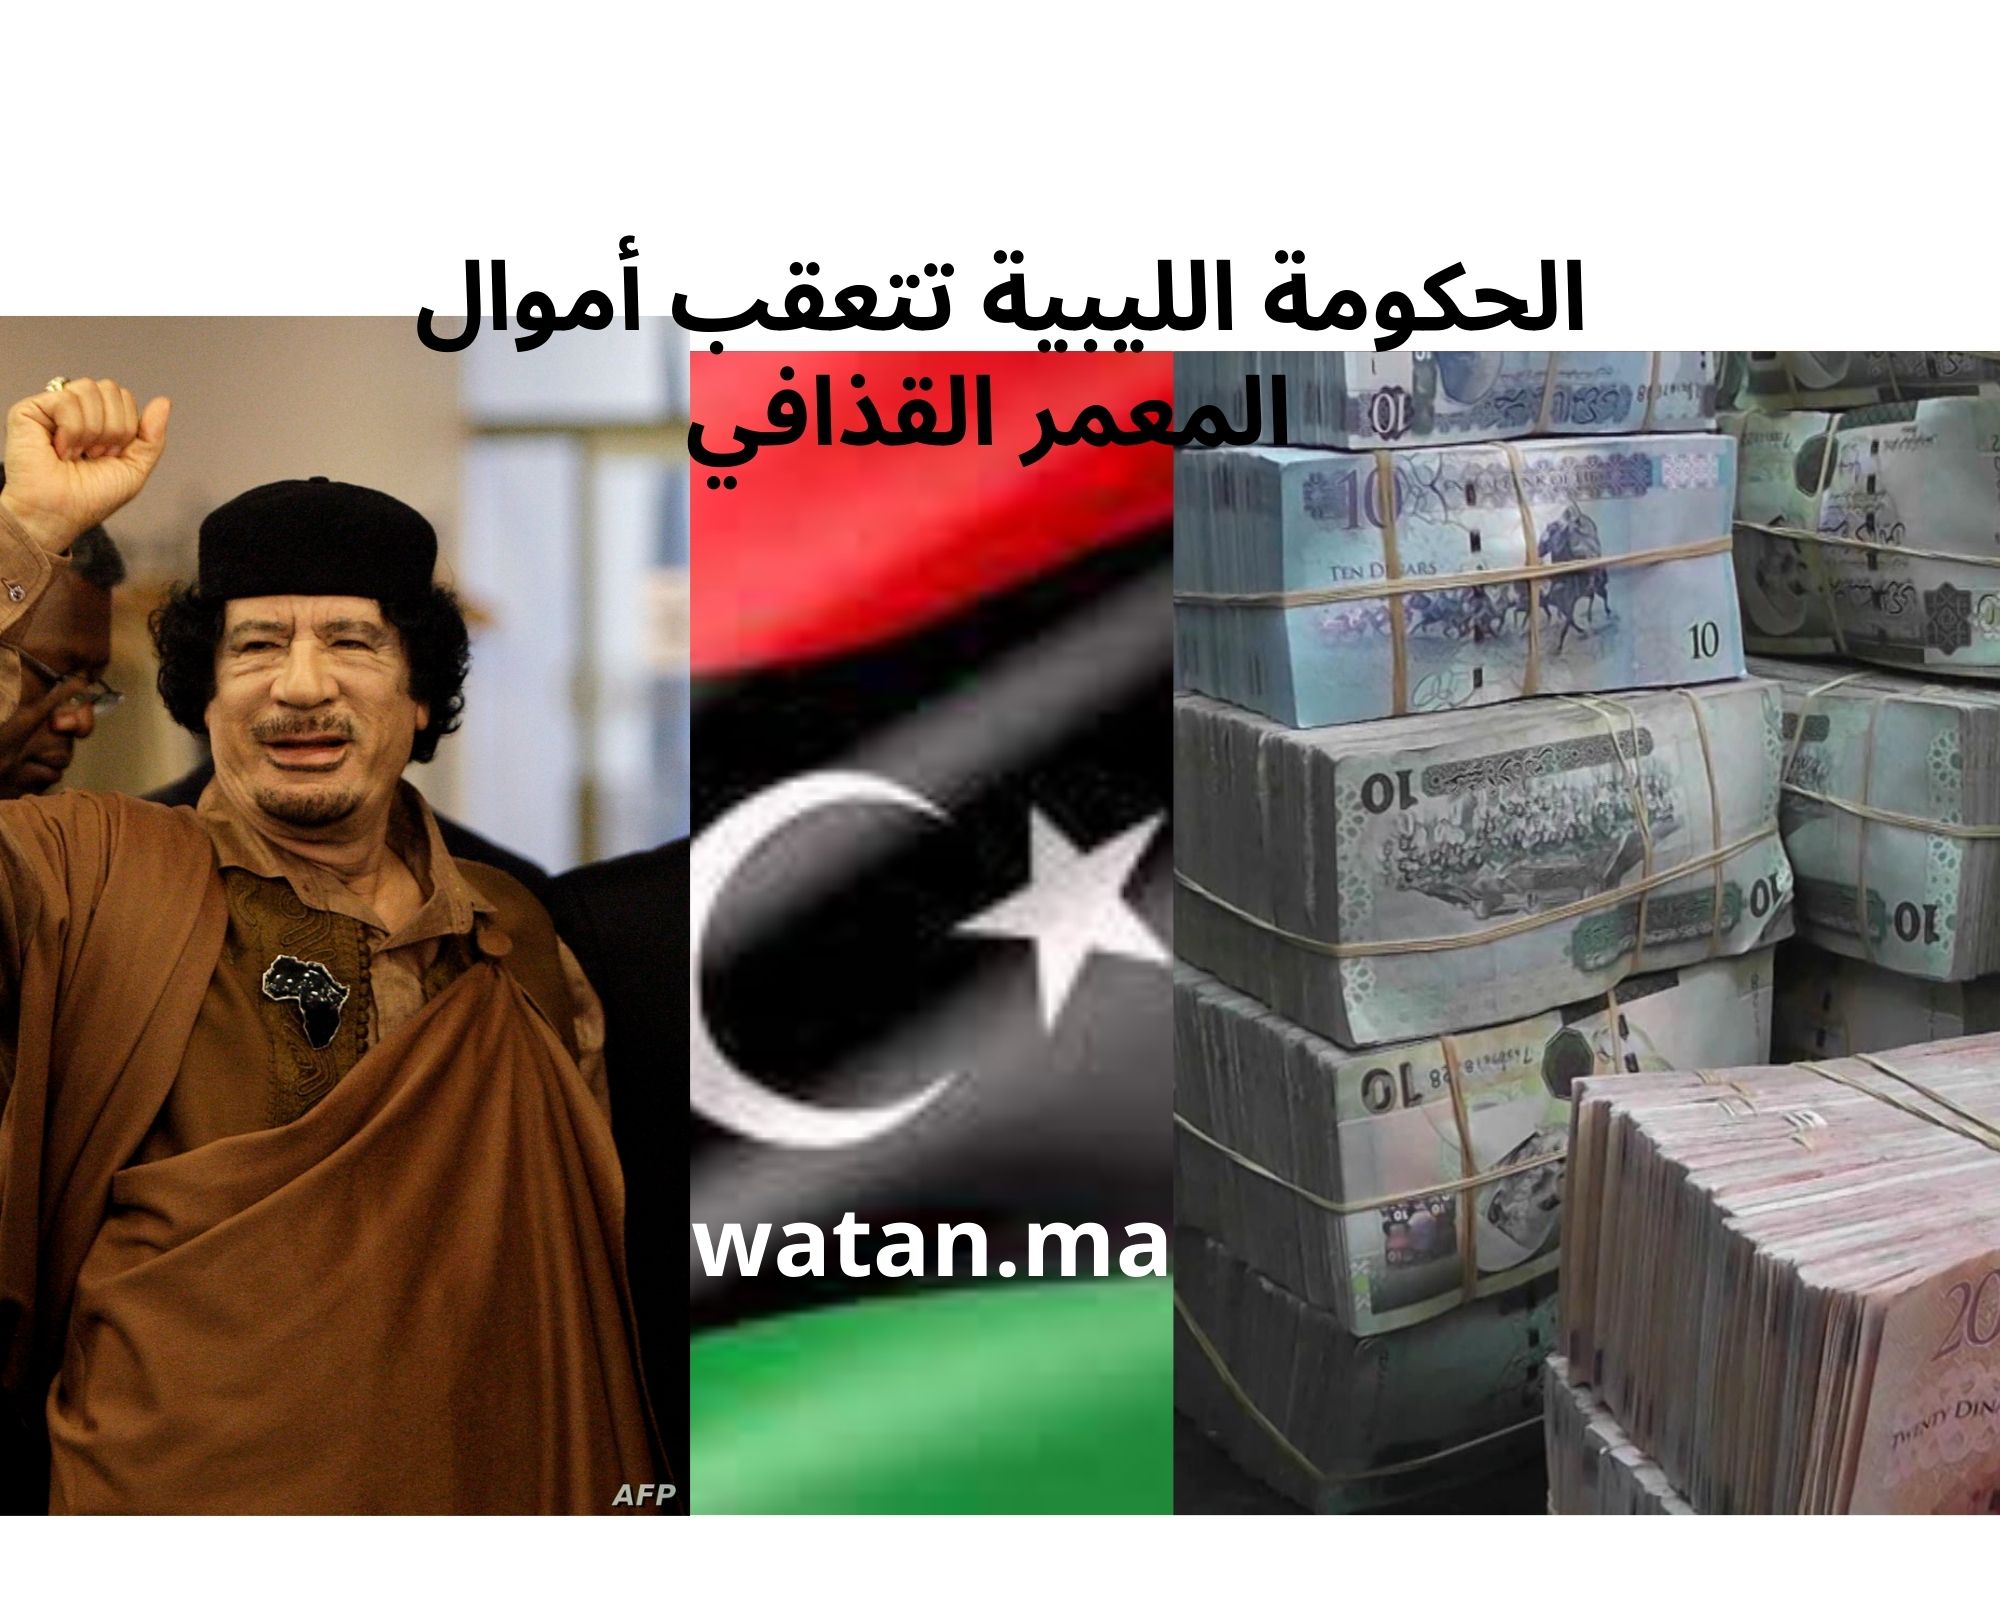 الحكومة الليبية تتعقب أموال المعمر القذافي